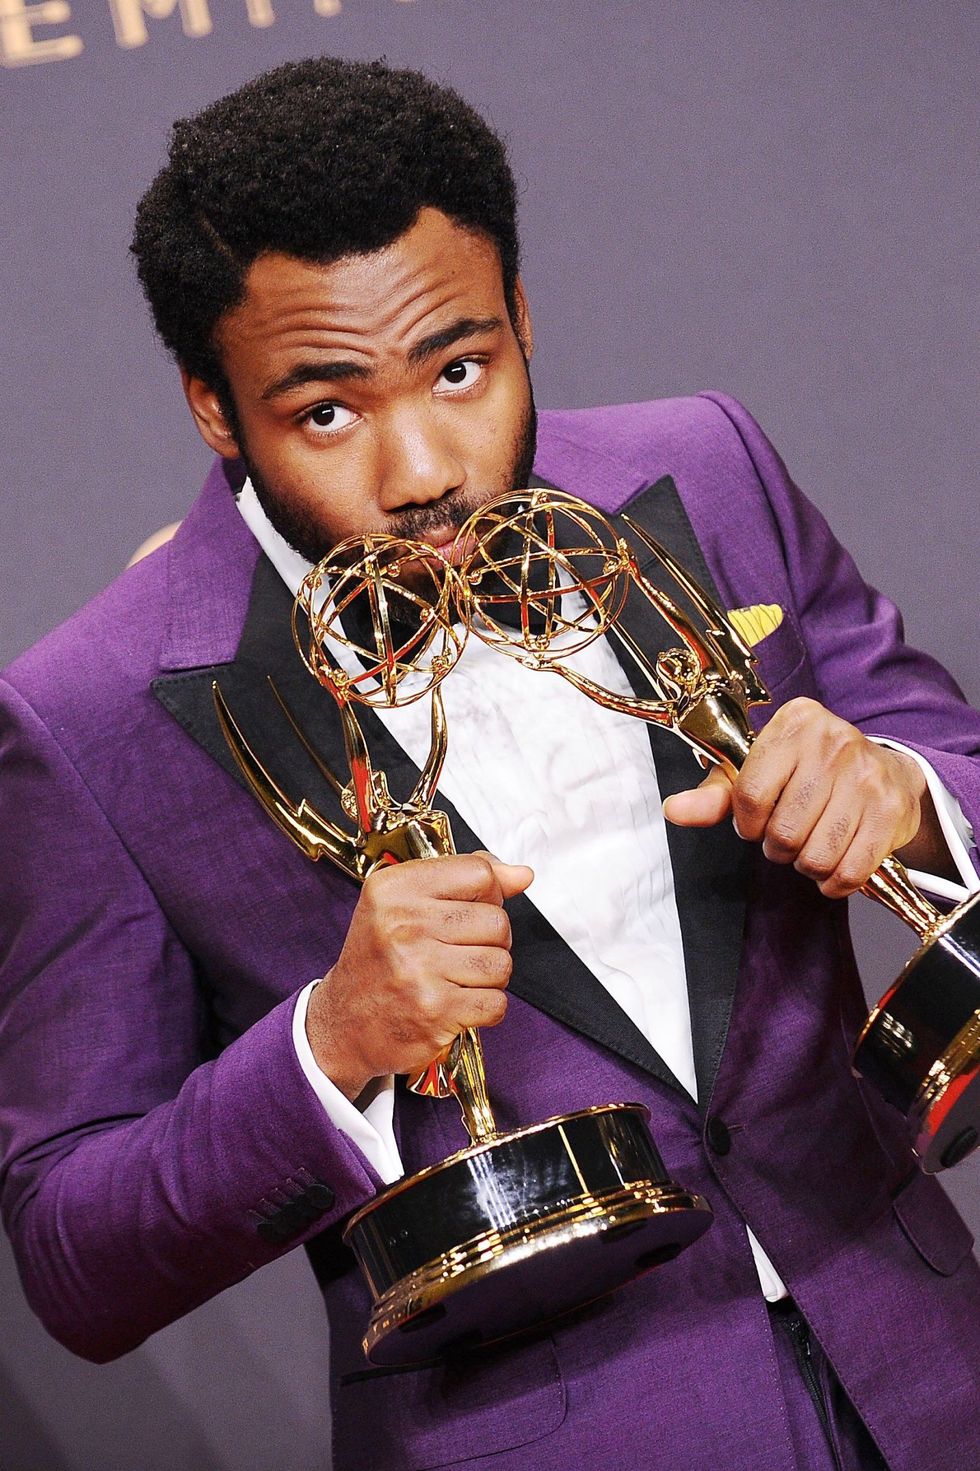 コメディ部門の監督賞を黒人男性が初めて受賞。